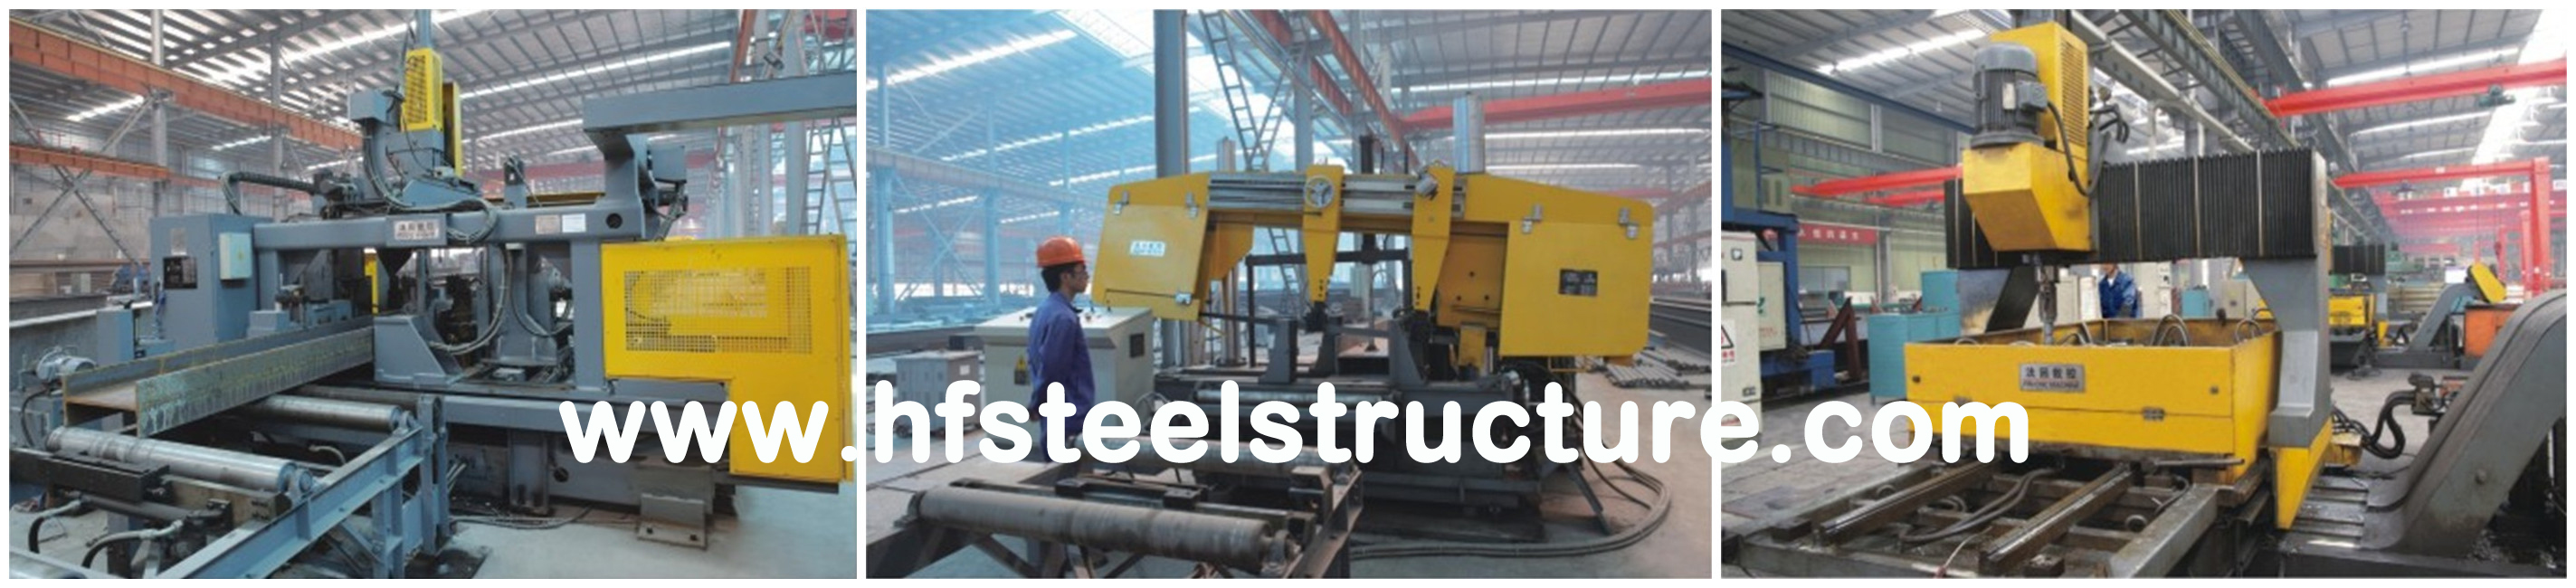 産業鋼鉄建物のための構造スチールの製作を完了して下さい